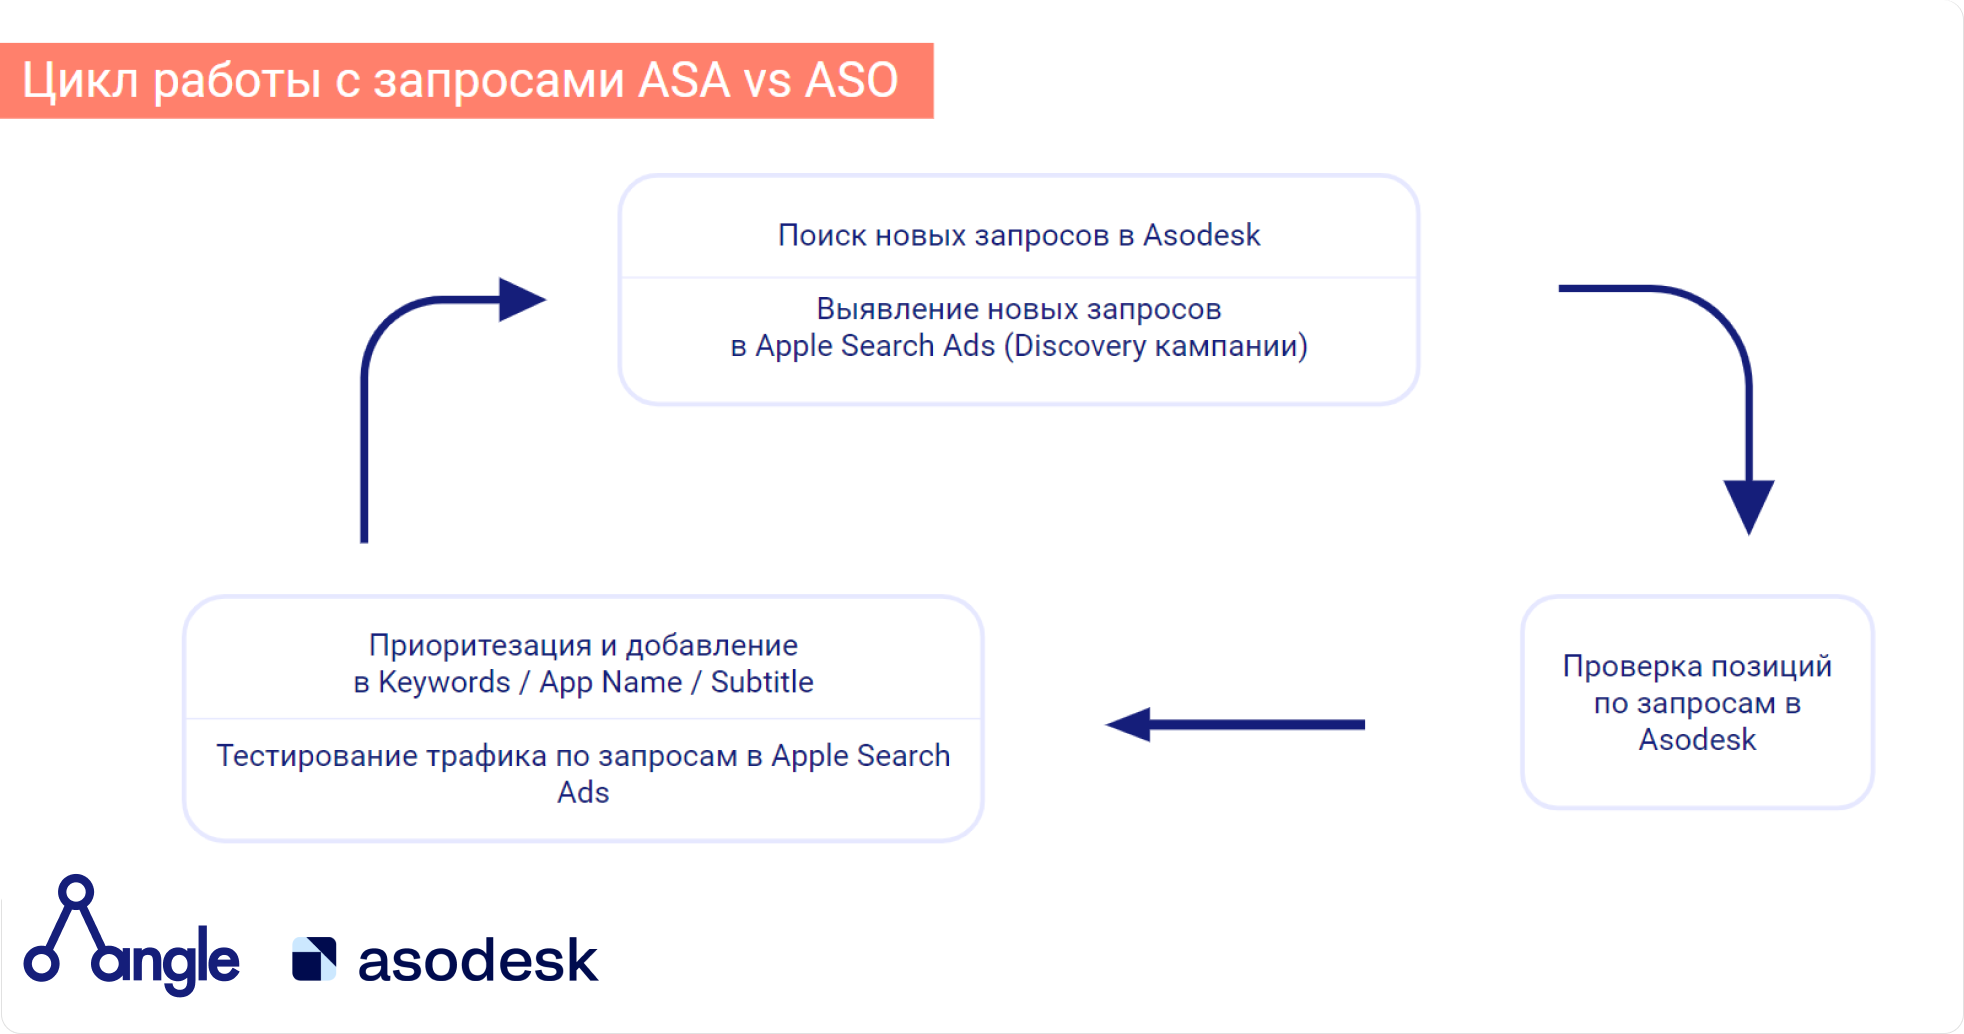 На схеме показан цикл работы с запросами из Apple Search Ads и поисковыми запросами App Store